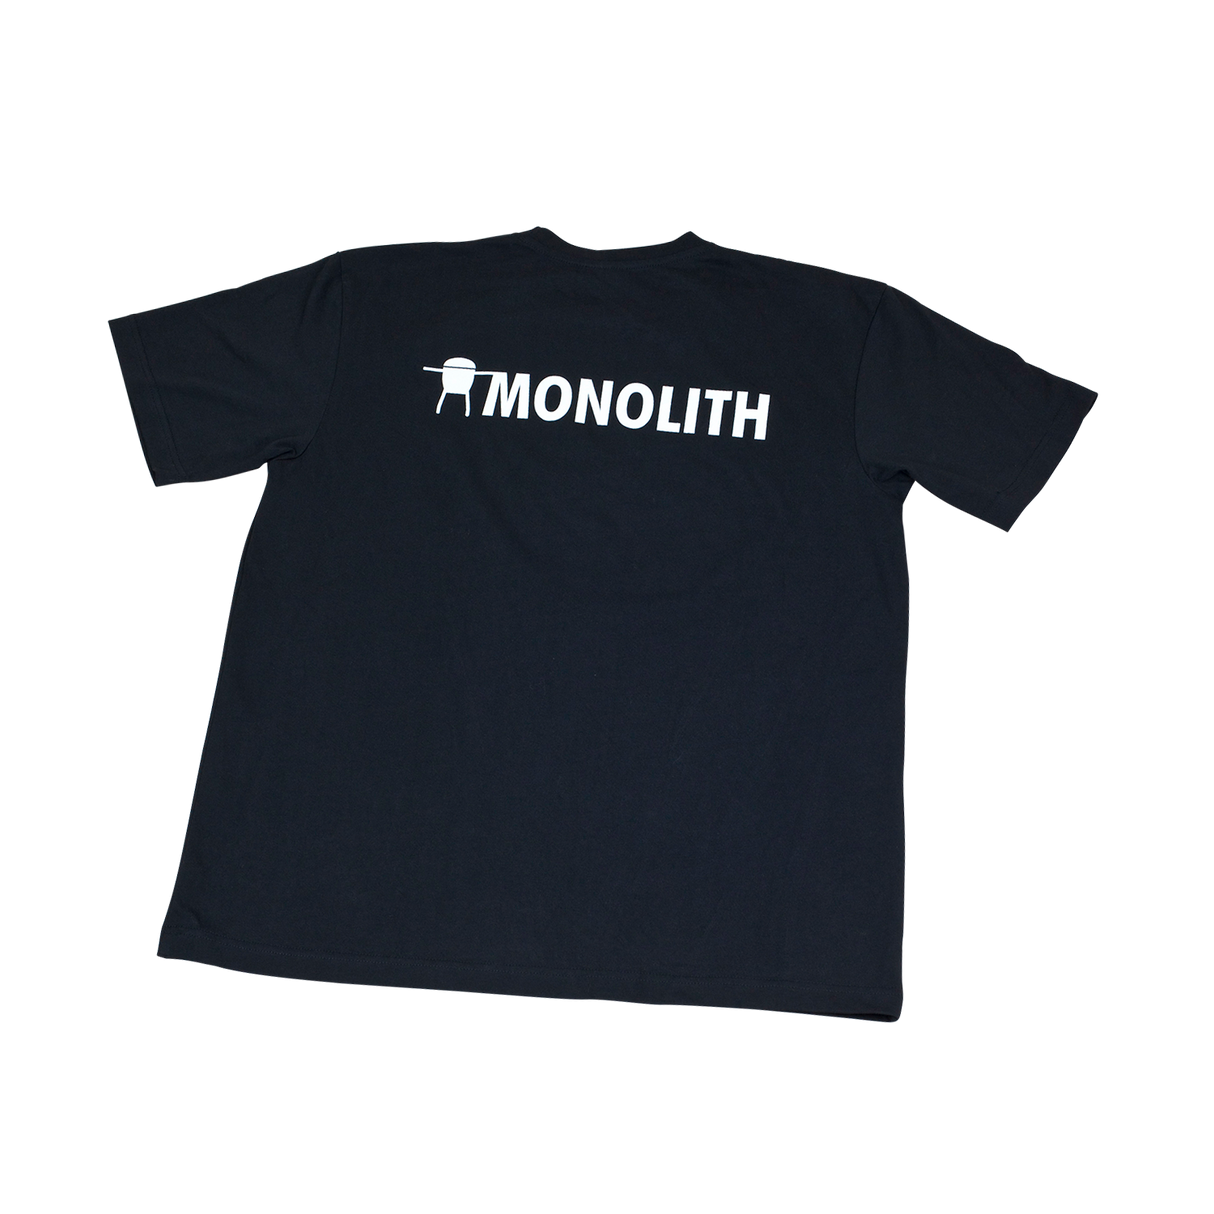 T-Shirt MONOLITH schwarz